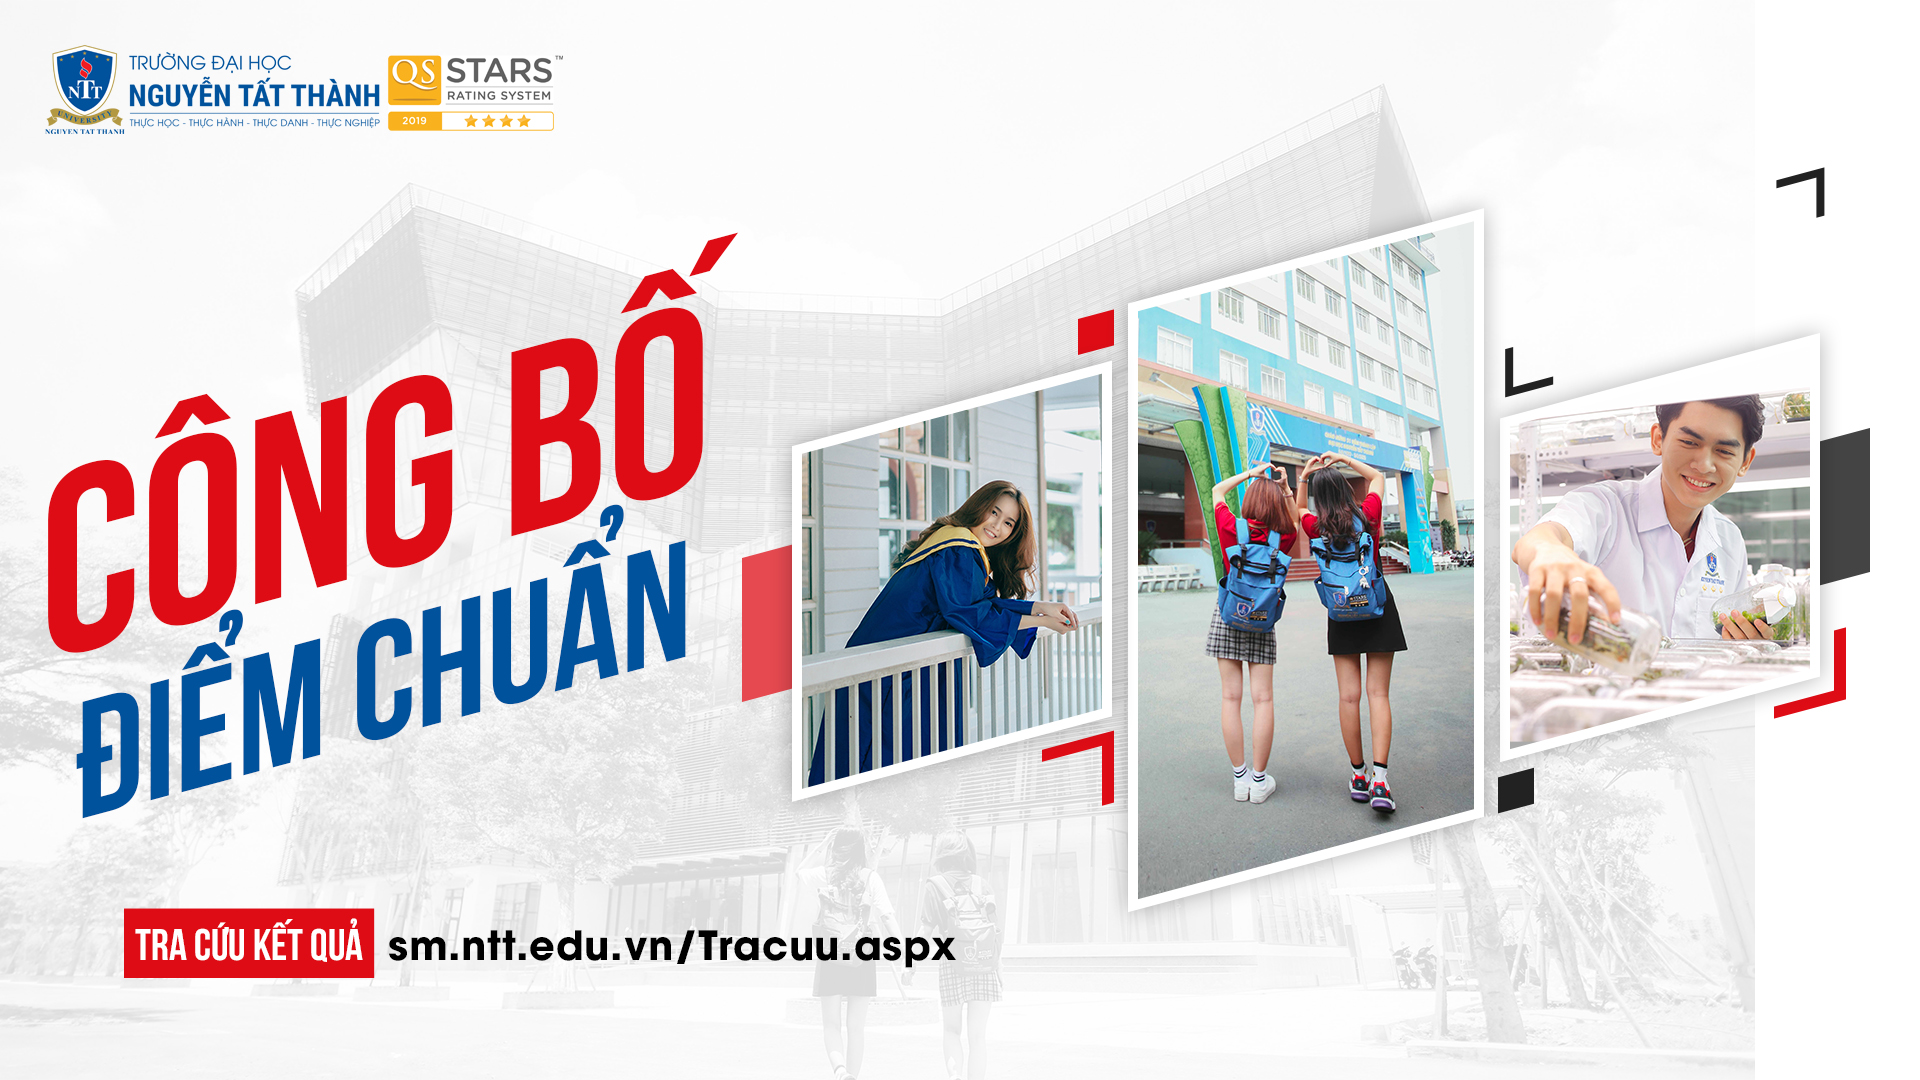 Đại học Nguyễn Tất Thành công bố điểm chuẩn trúng tuyển Đại học chính quy - Năm 2022